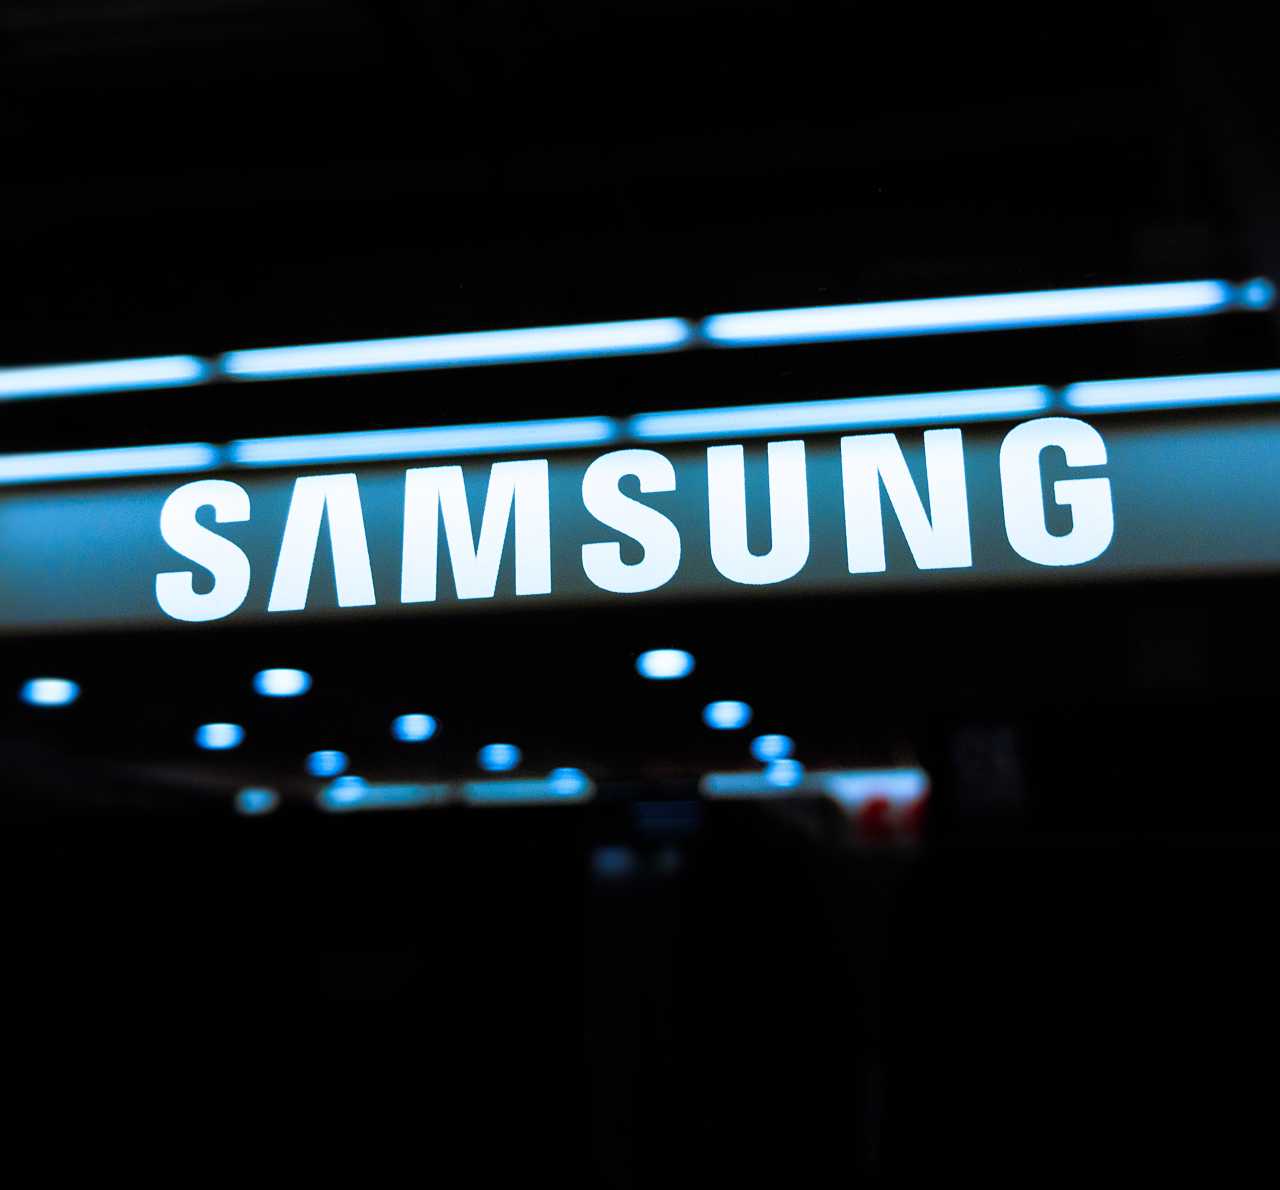 Samsung - Androiditaly,com 20220915 2